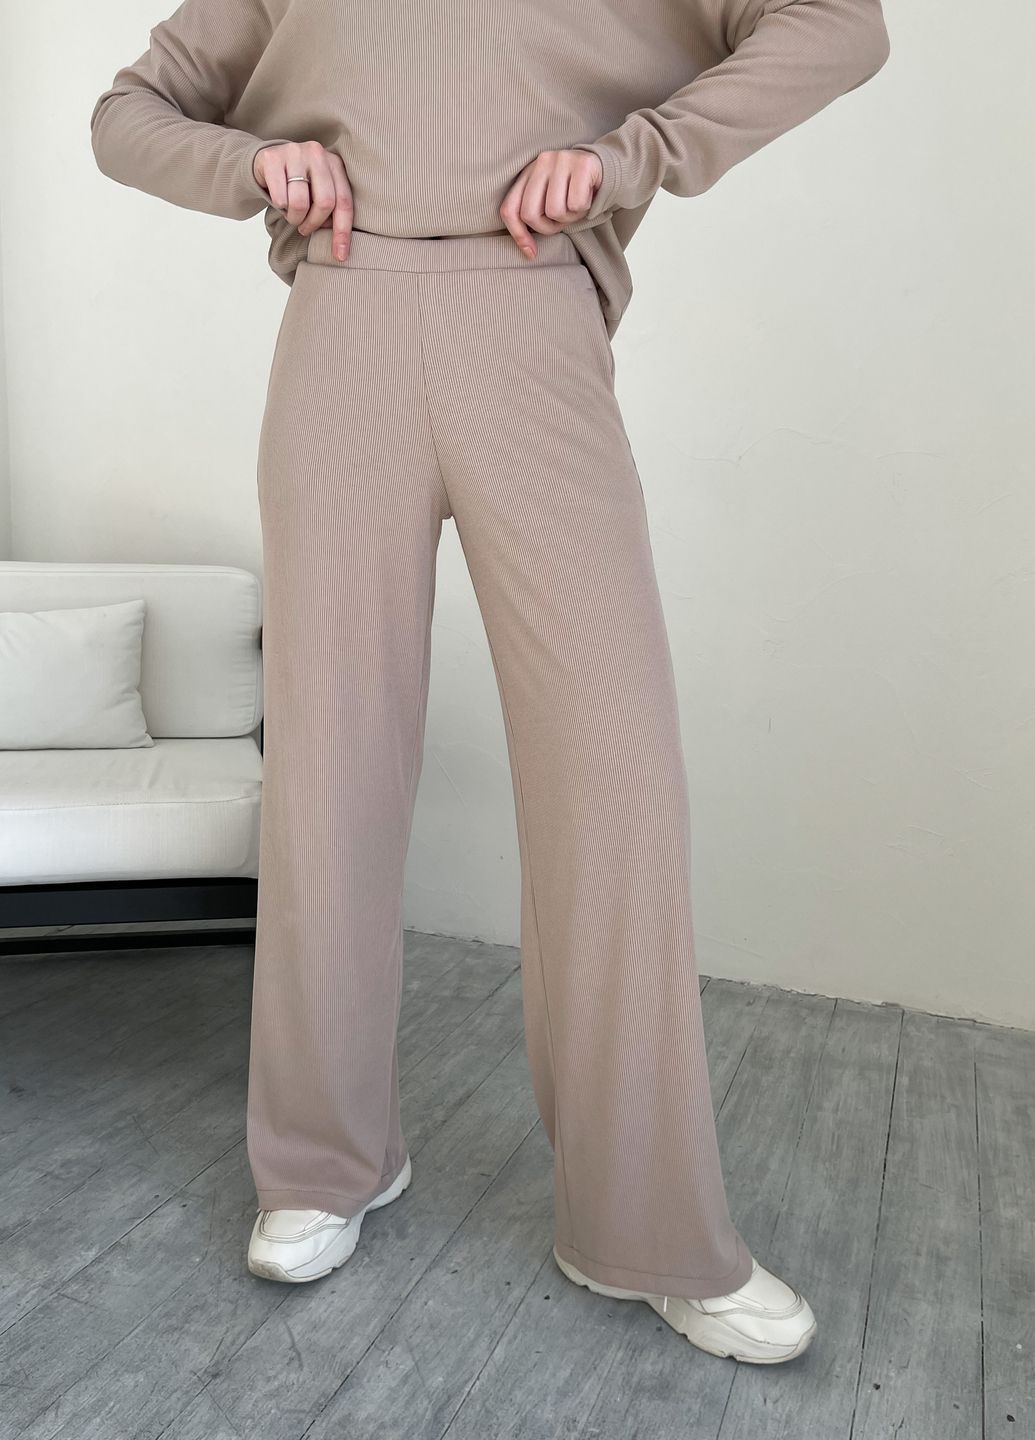 Купить Бежевый костюм женский в рубчик с широкими штанами Merlini Мантуя 100000403, размер XS-M в интернет-магазине